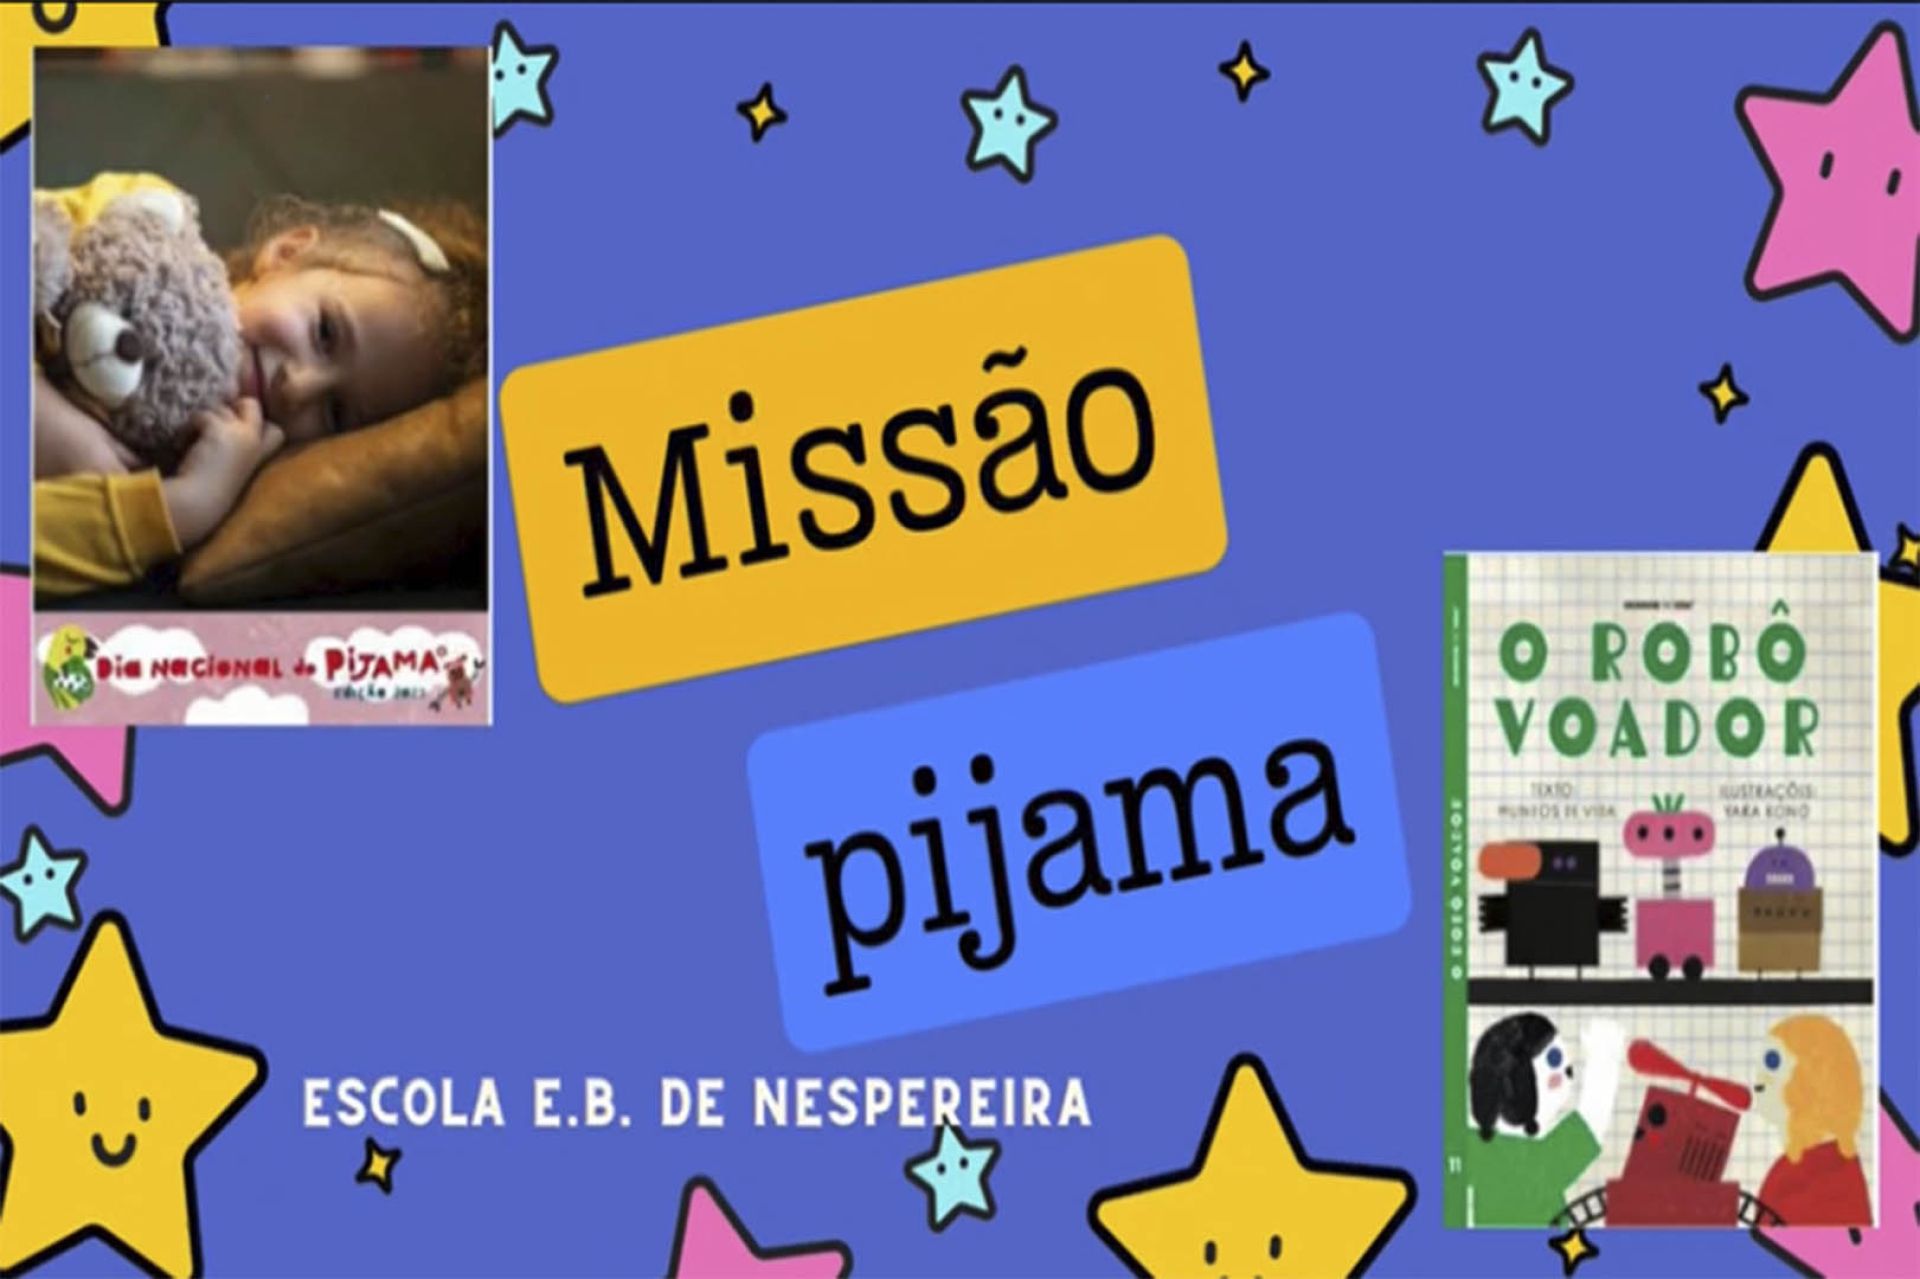 EB de Nespereira - Missão Pijama